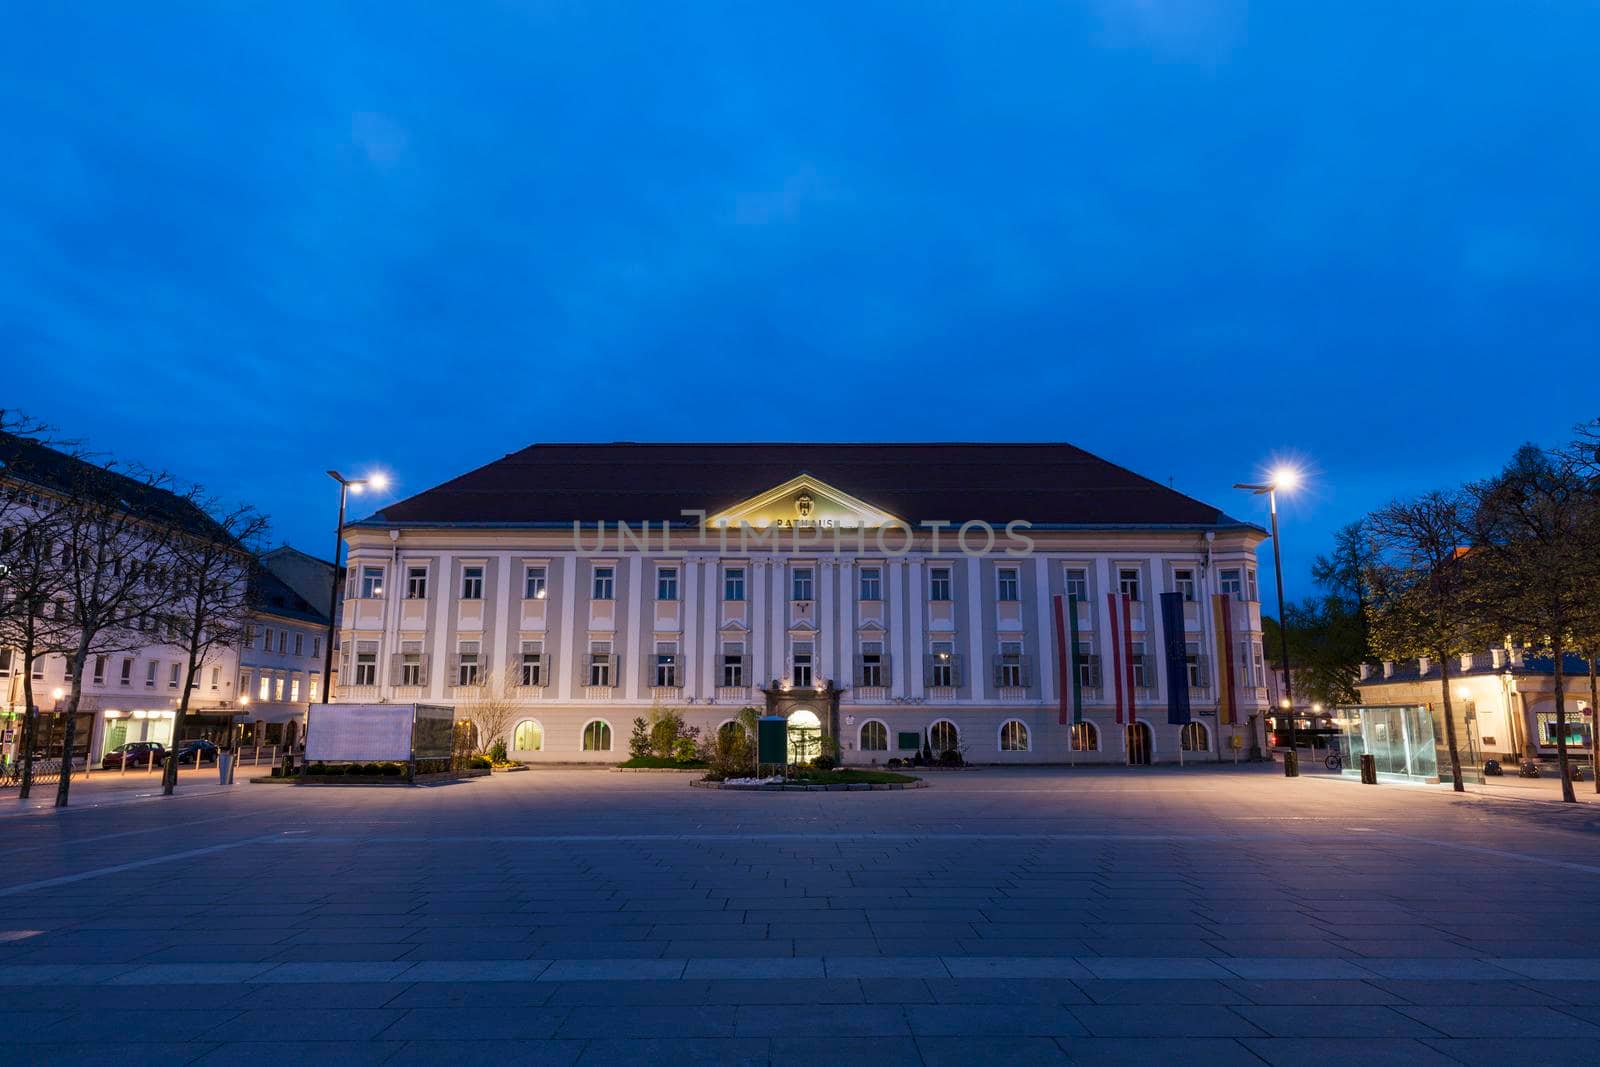 Neues Rathaus on Neuer Platz in Klagenfurt. Klagenfurt, Carinthia, Austria.